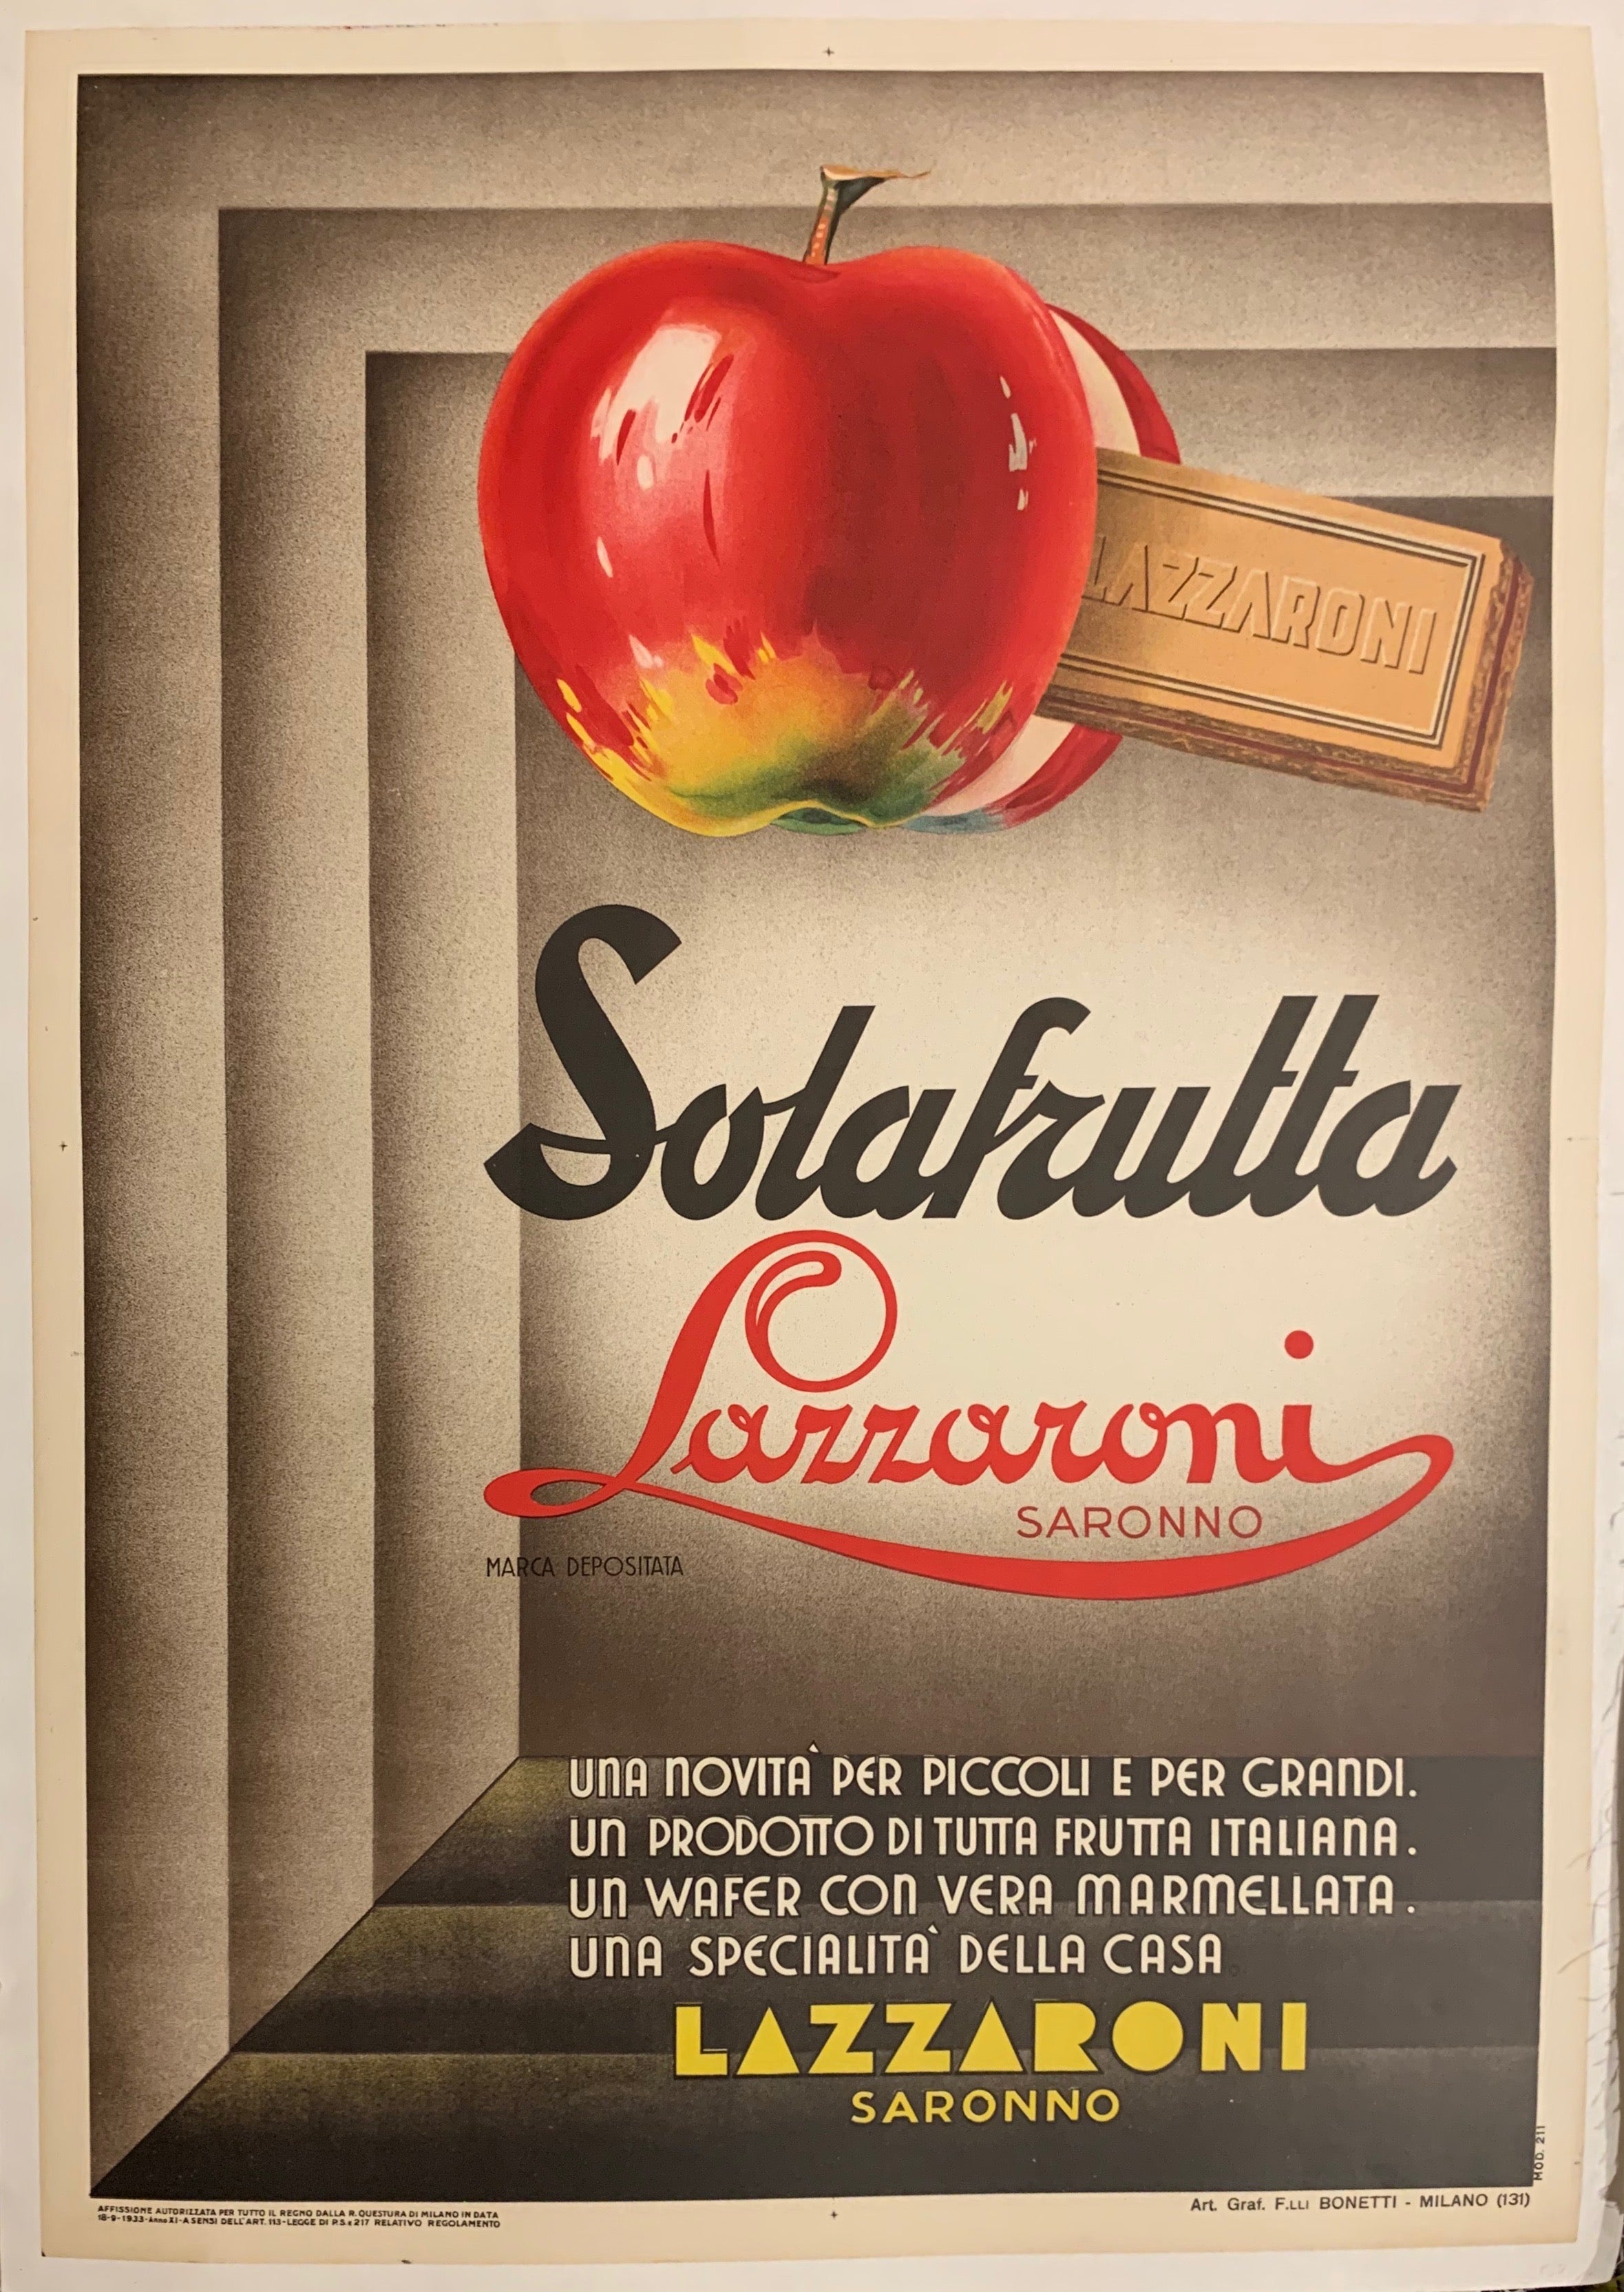 Solafrutta Lazzaroni Saronno Poster